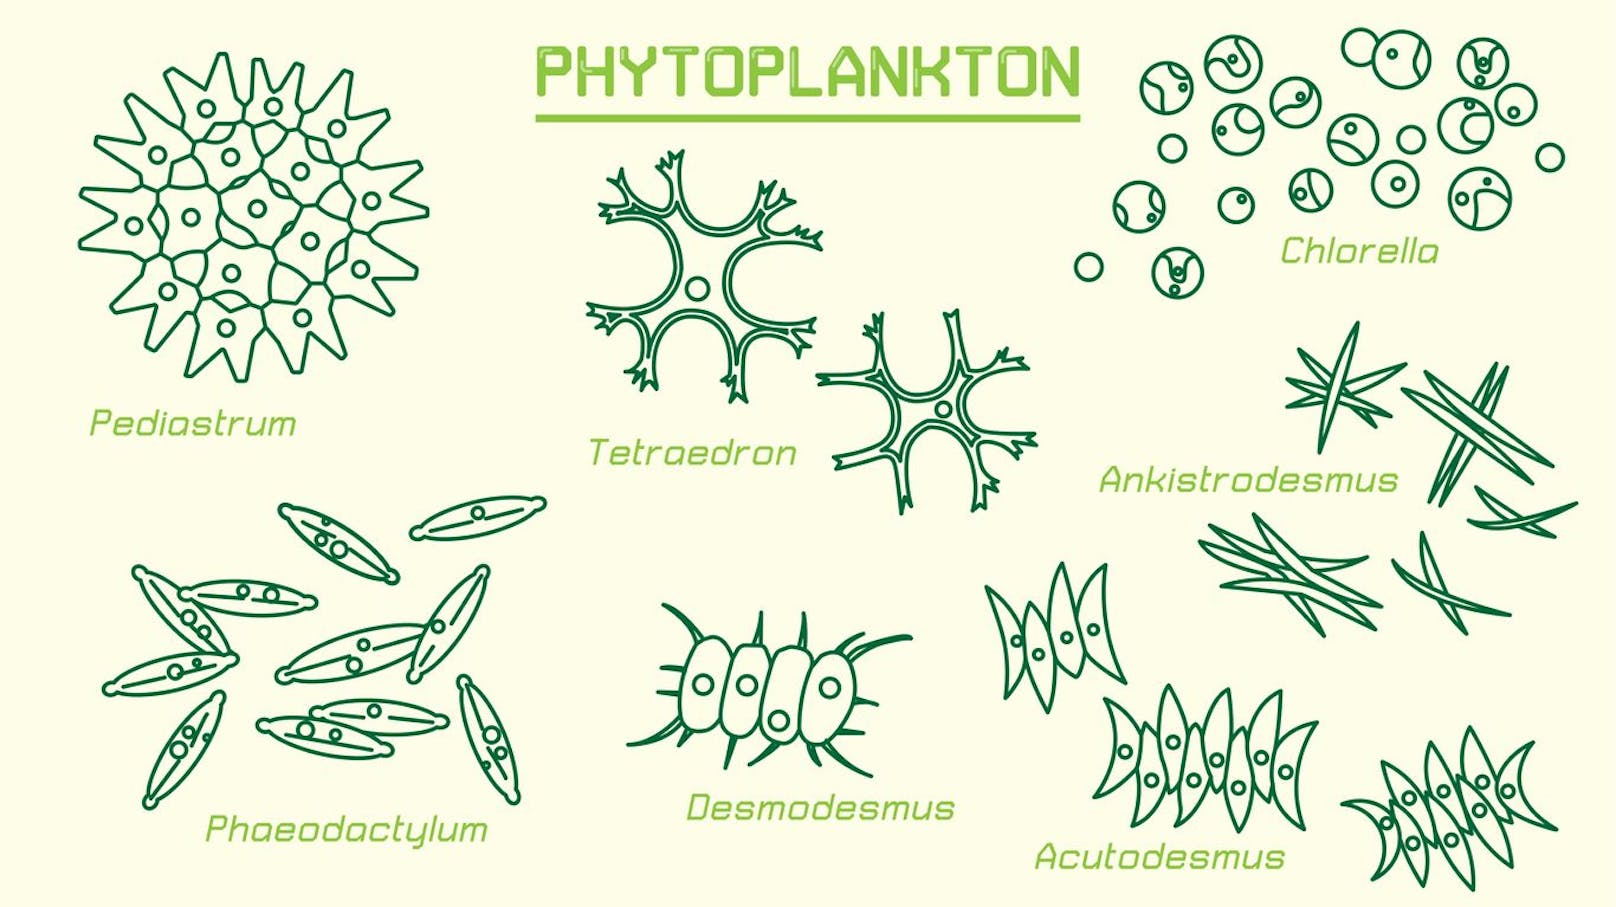 Phytoplankton wandelt Lichtenergie und Mineralstoffe in organische Stoffe um.